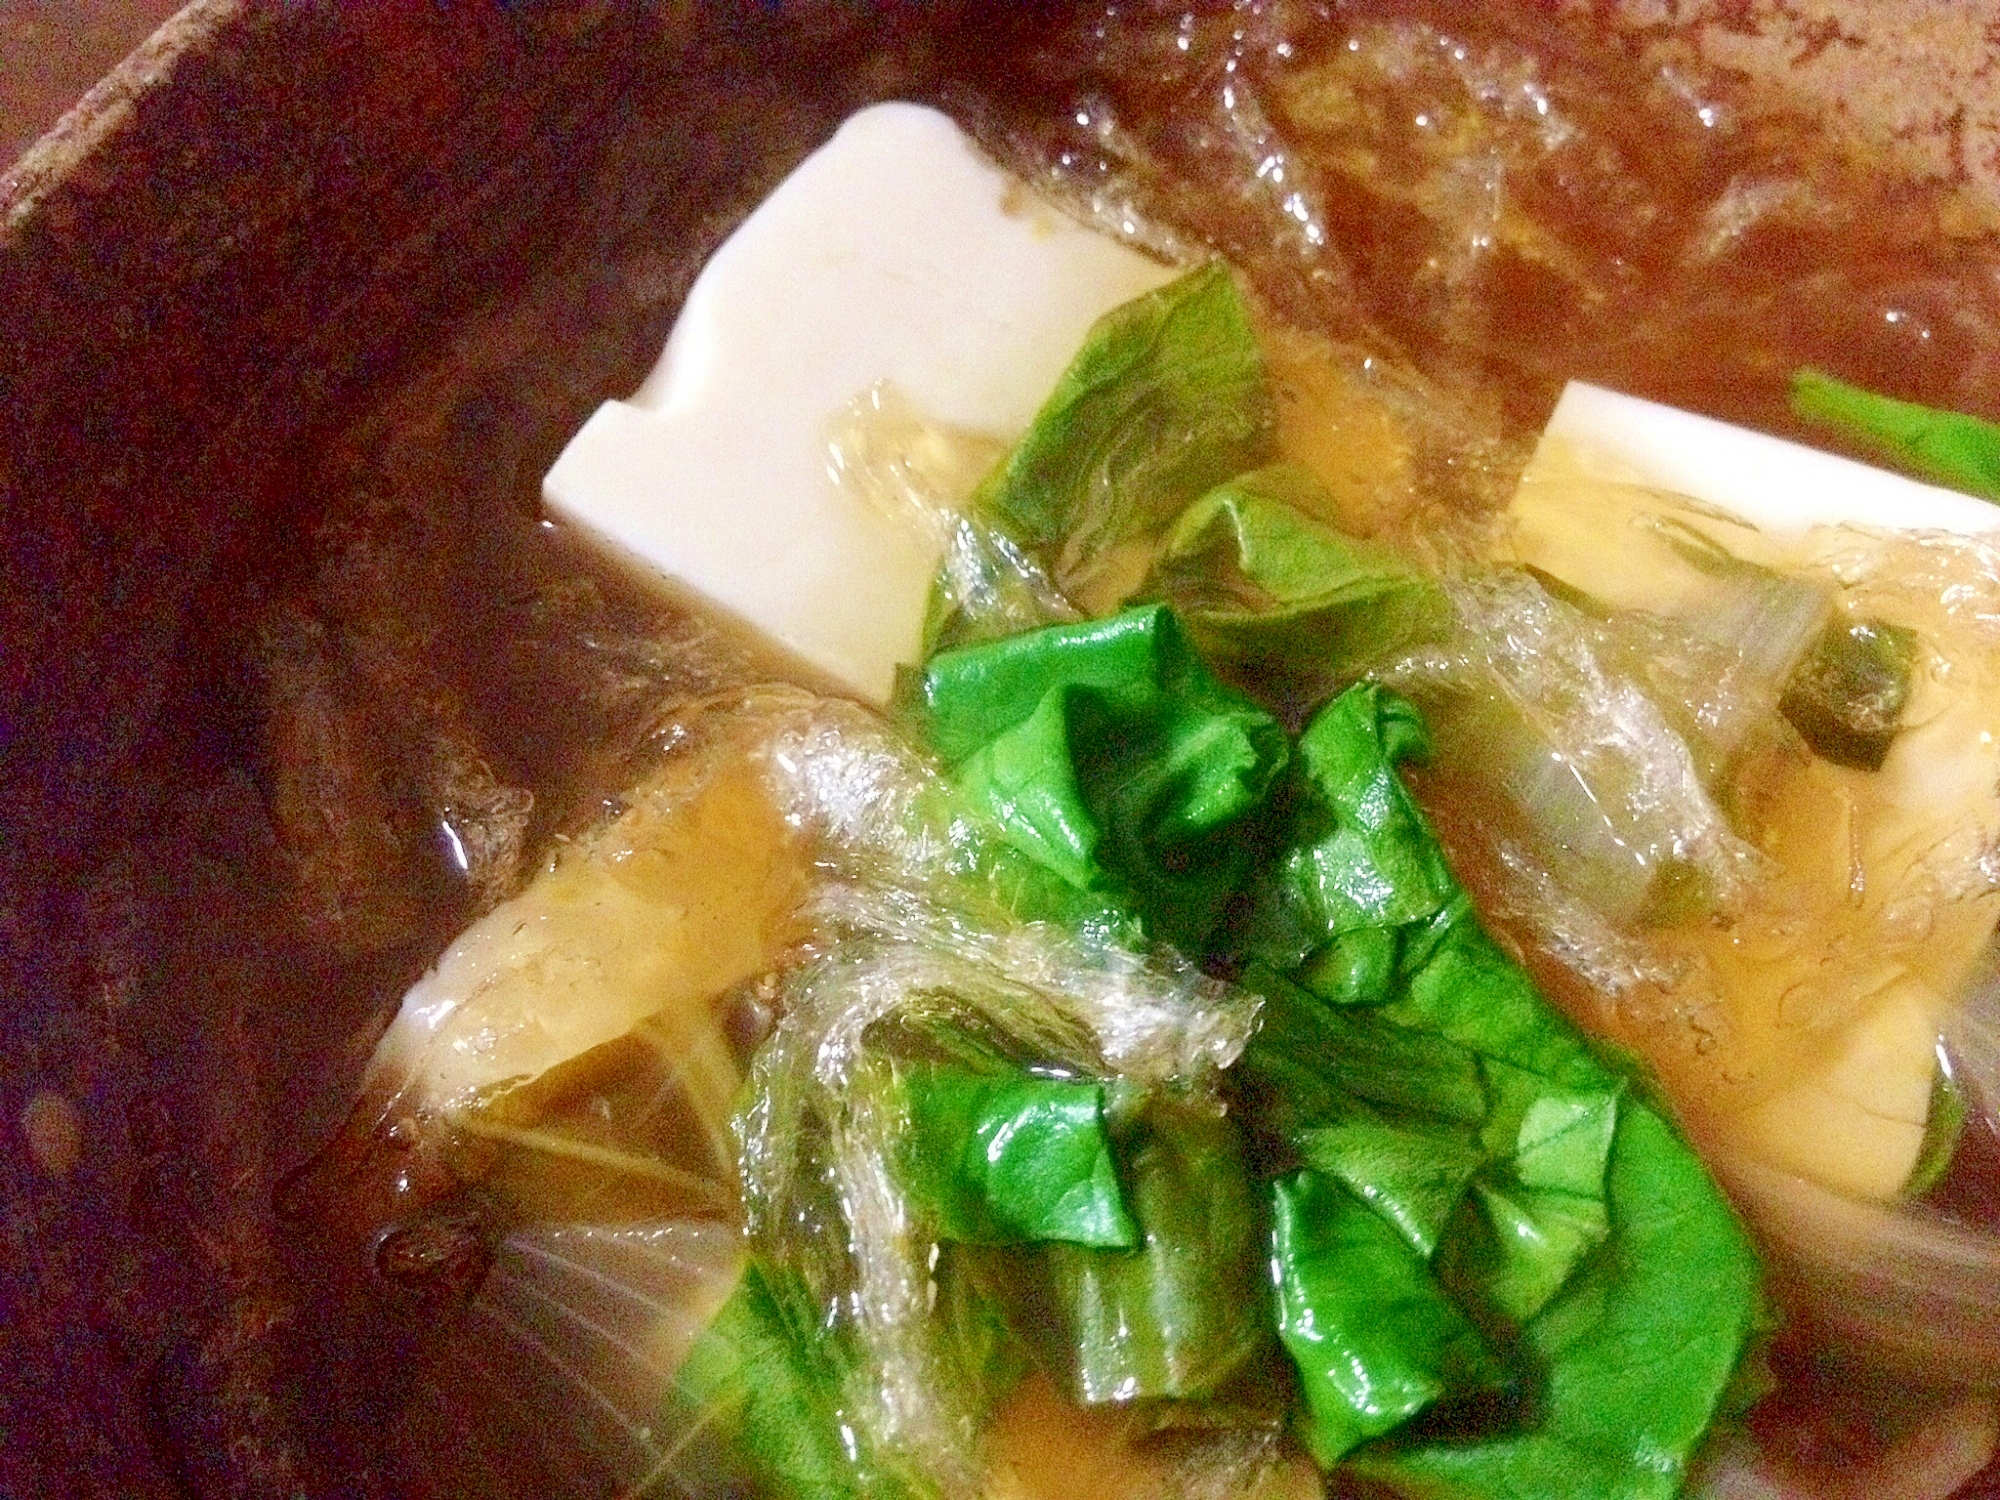 ヘルシー「糸寒天×豆腐×小松菜のダイエットスープ」